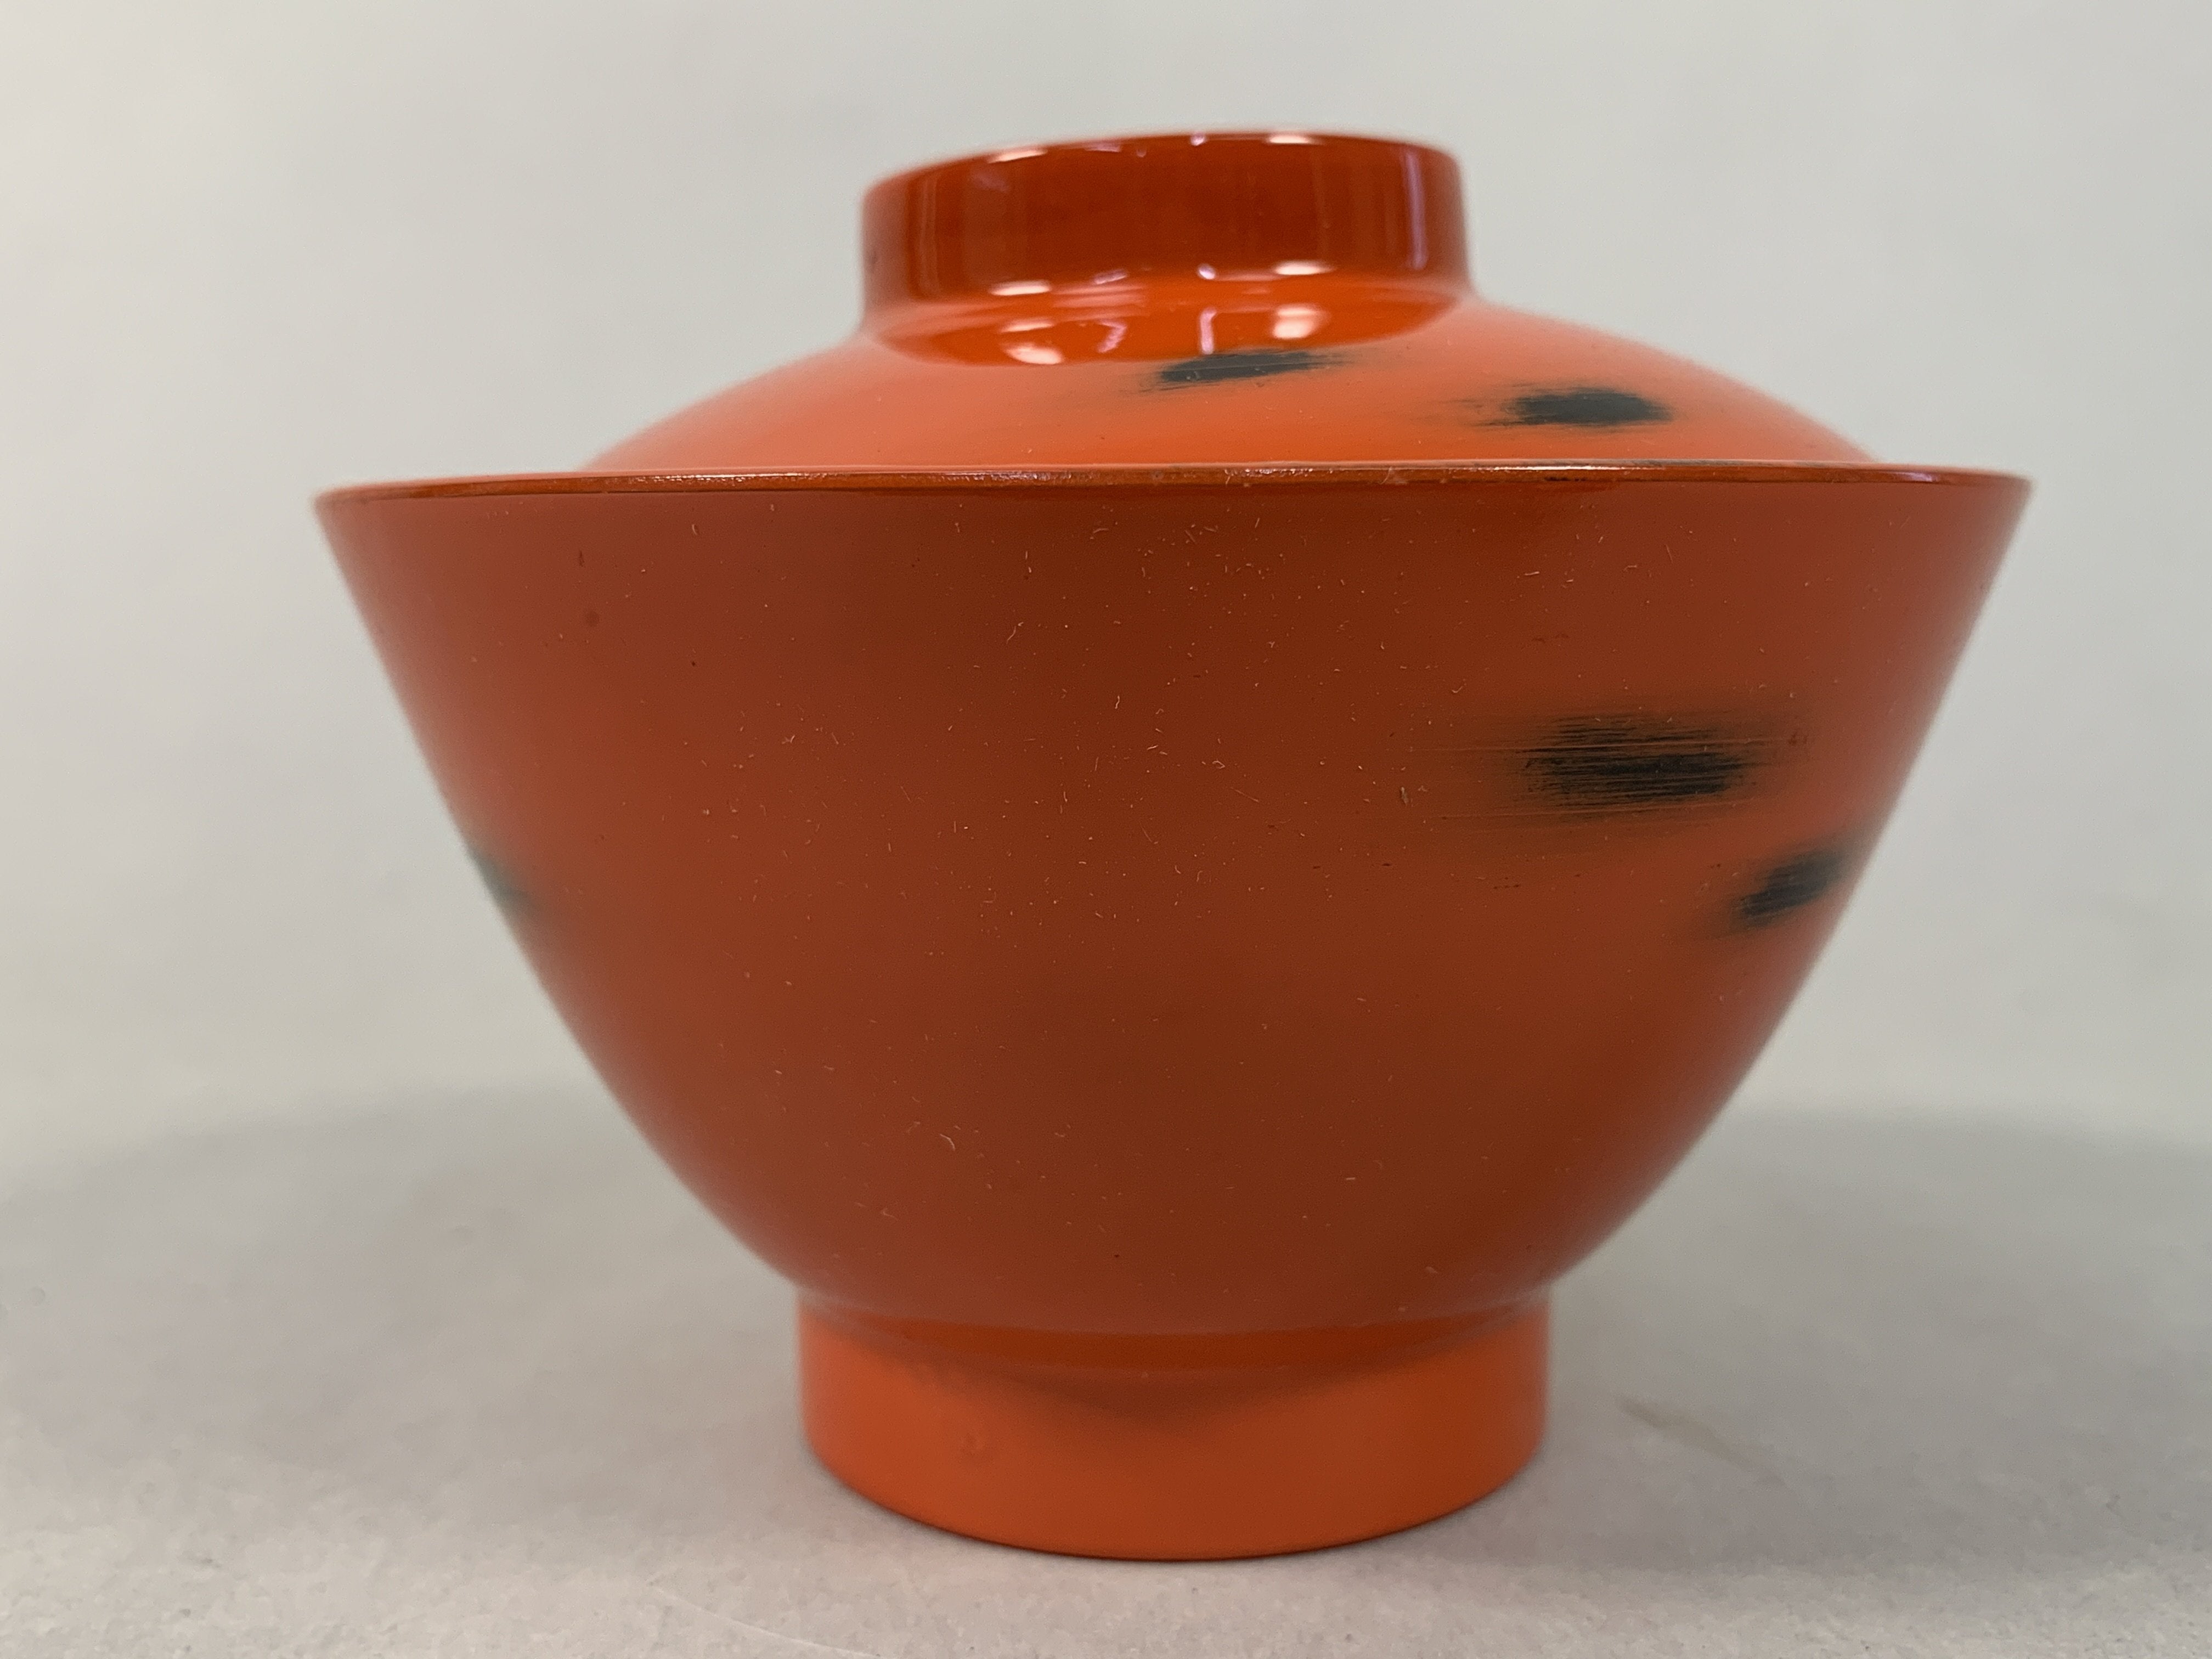 Japanese Lacquerware Lidded Bowl Vtg Replica Red Black Owan Soup Rice UR397